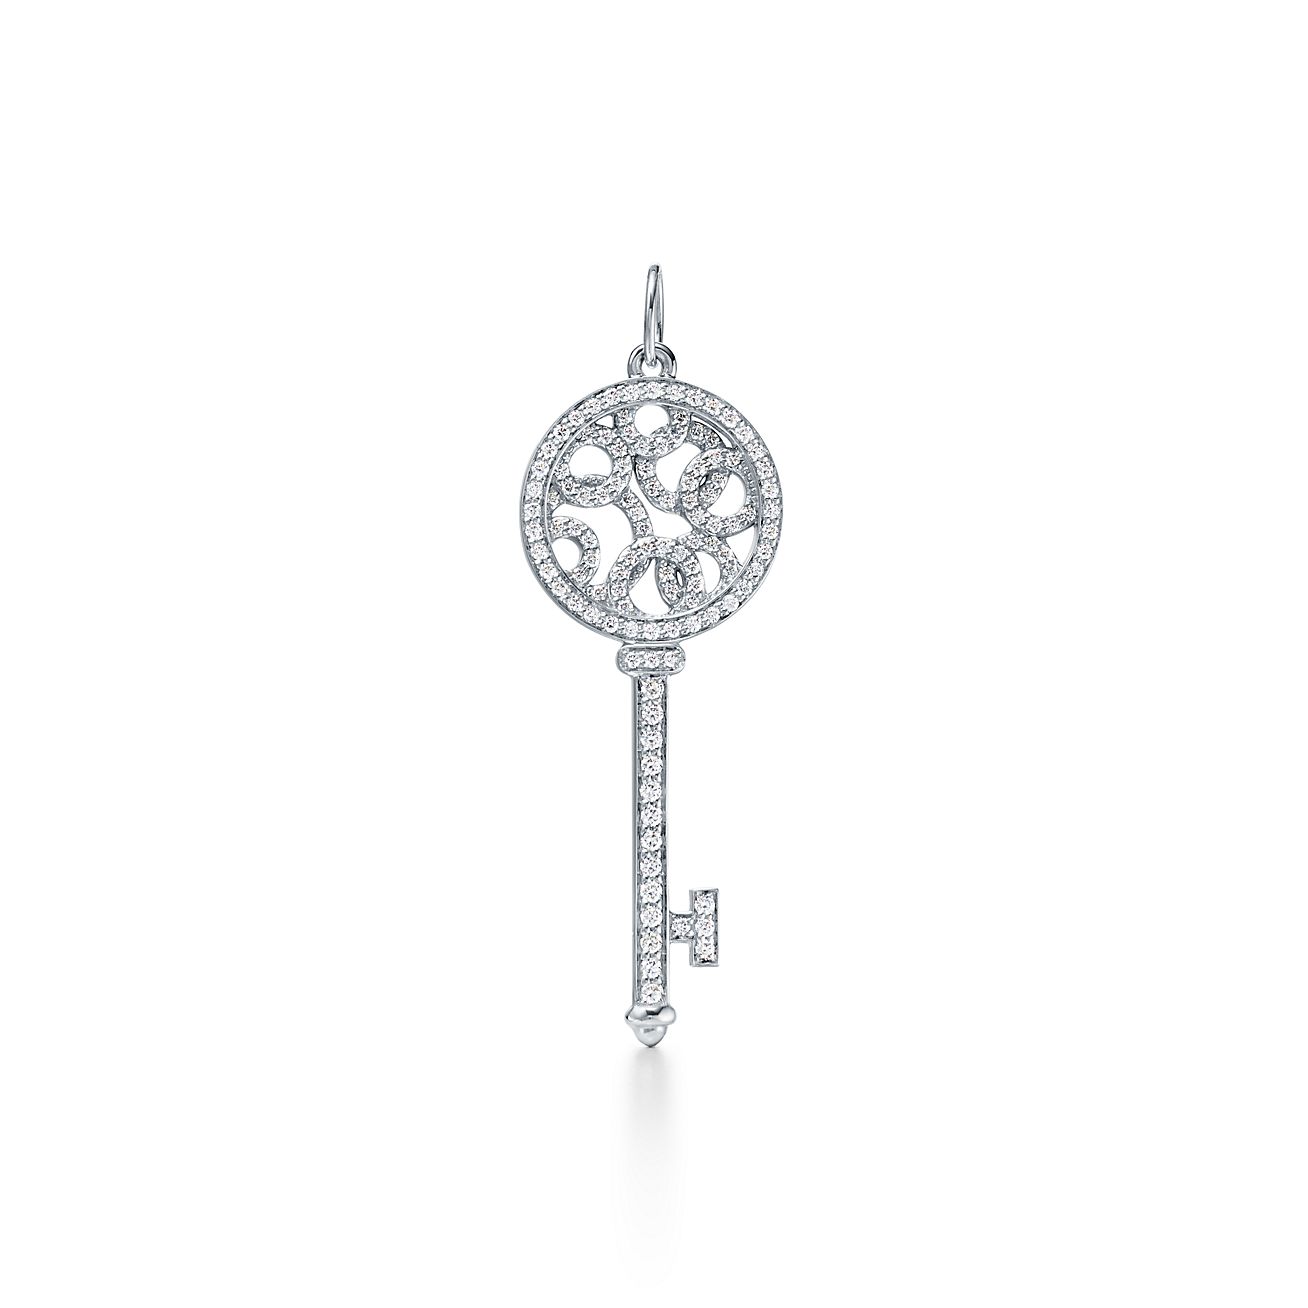 tiffany jewelry key necklace